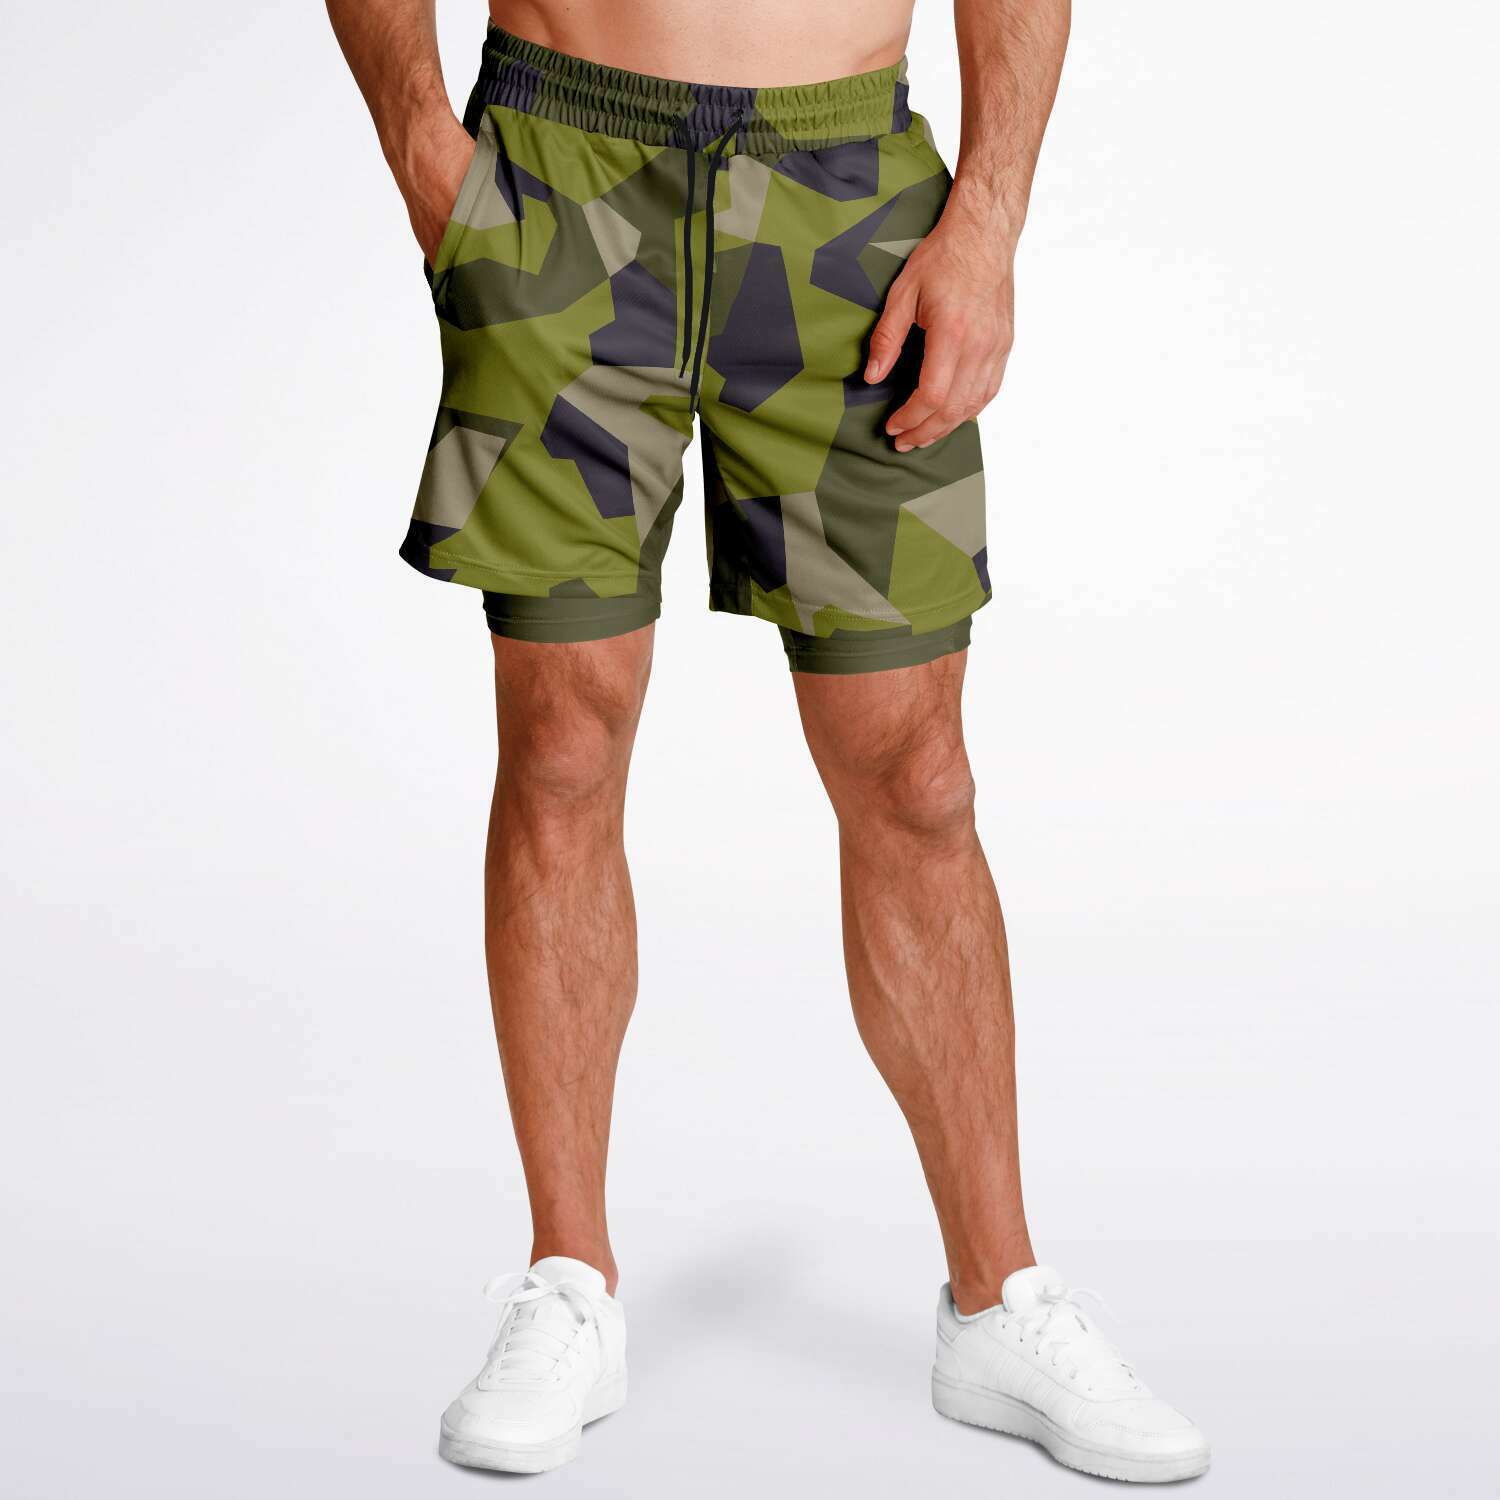 M90 Green Modern Warfare Camo Shorts